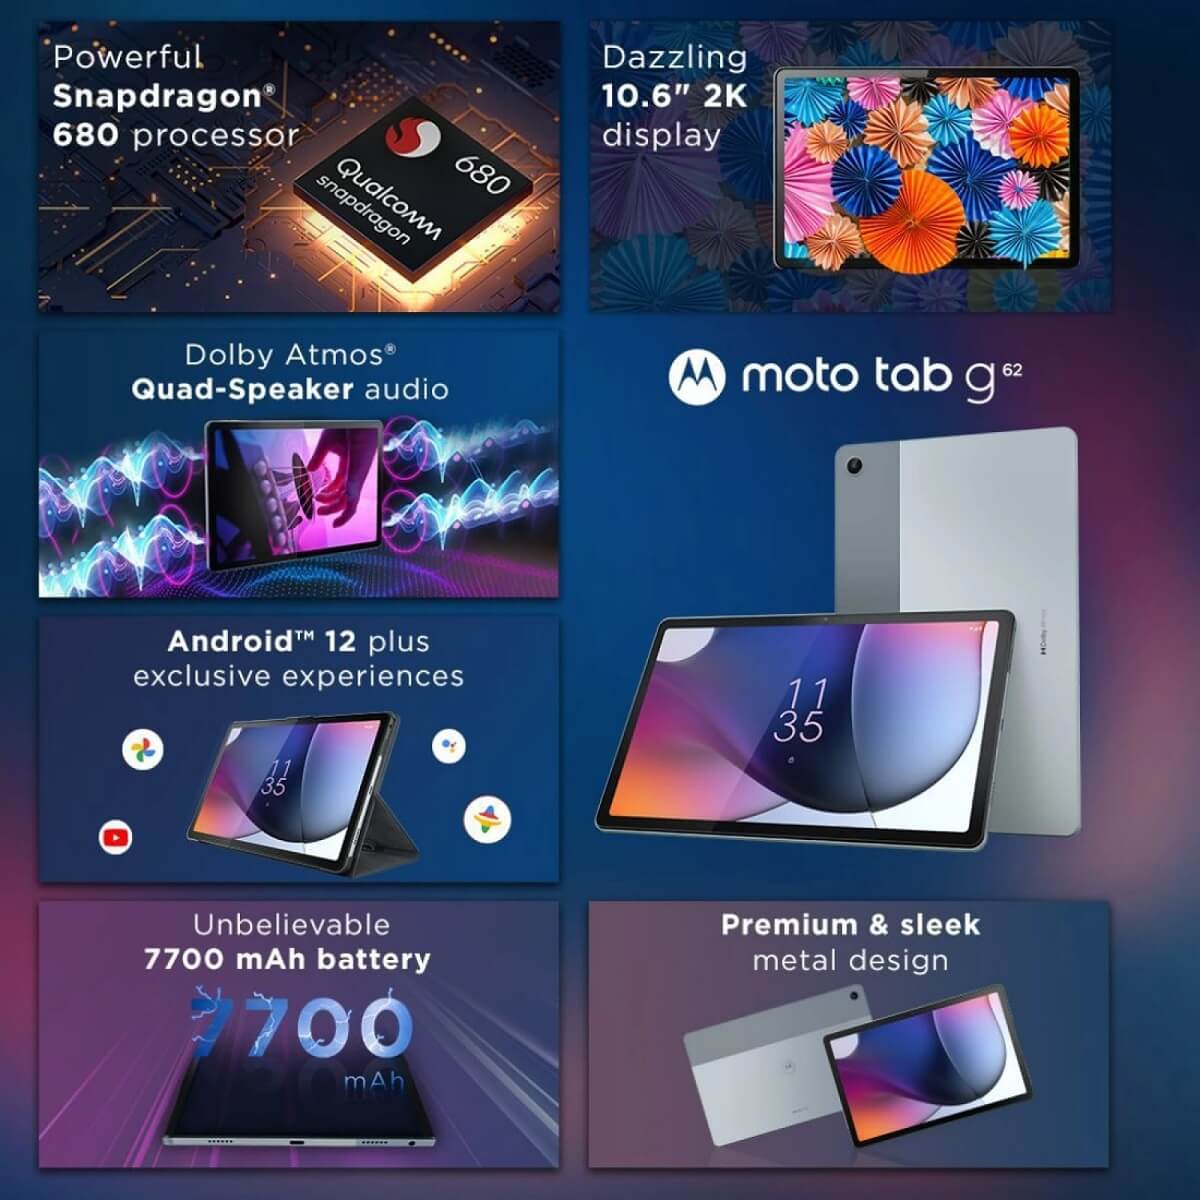 Motorola Moto tab G62 features India